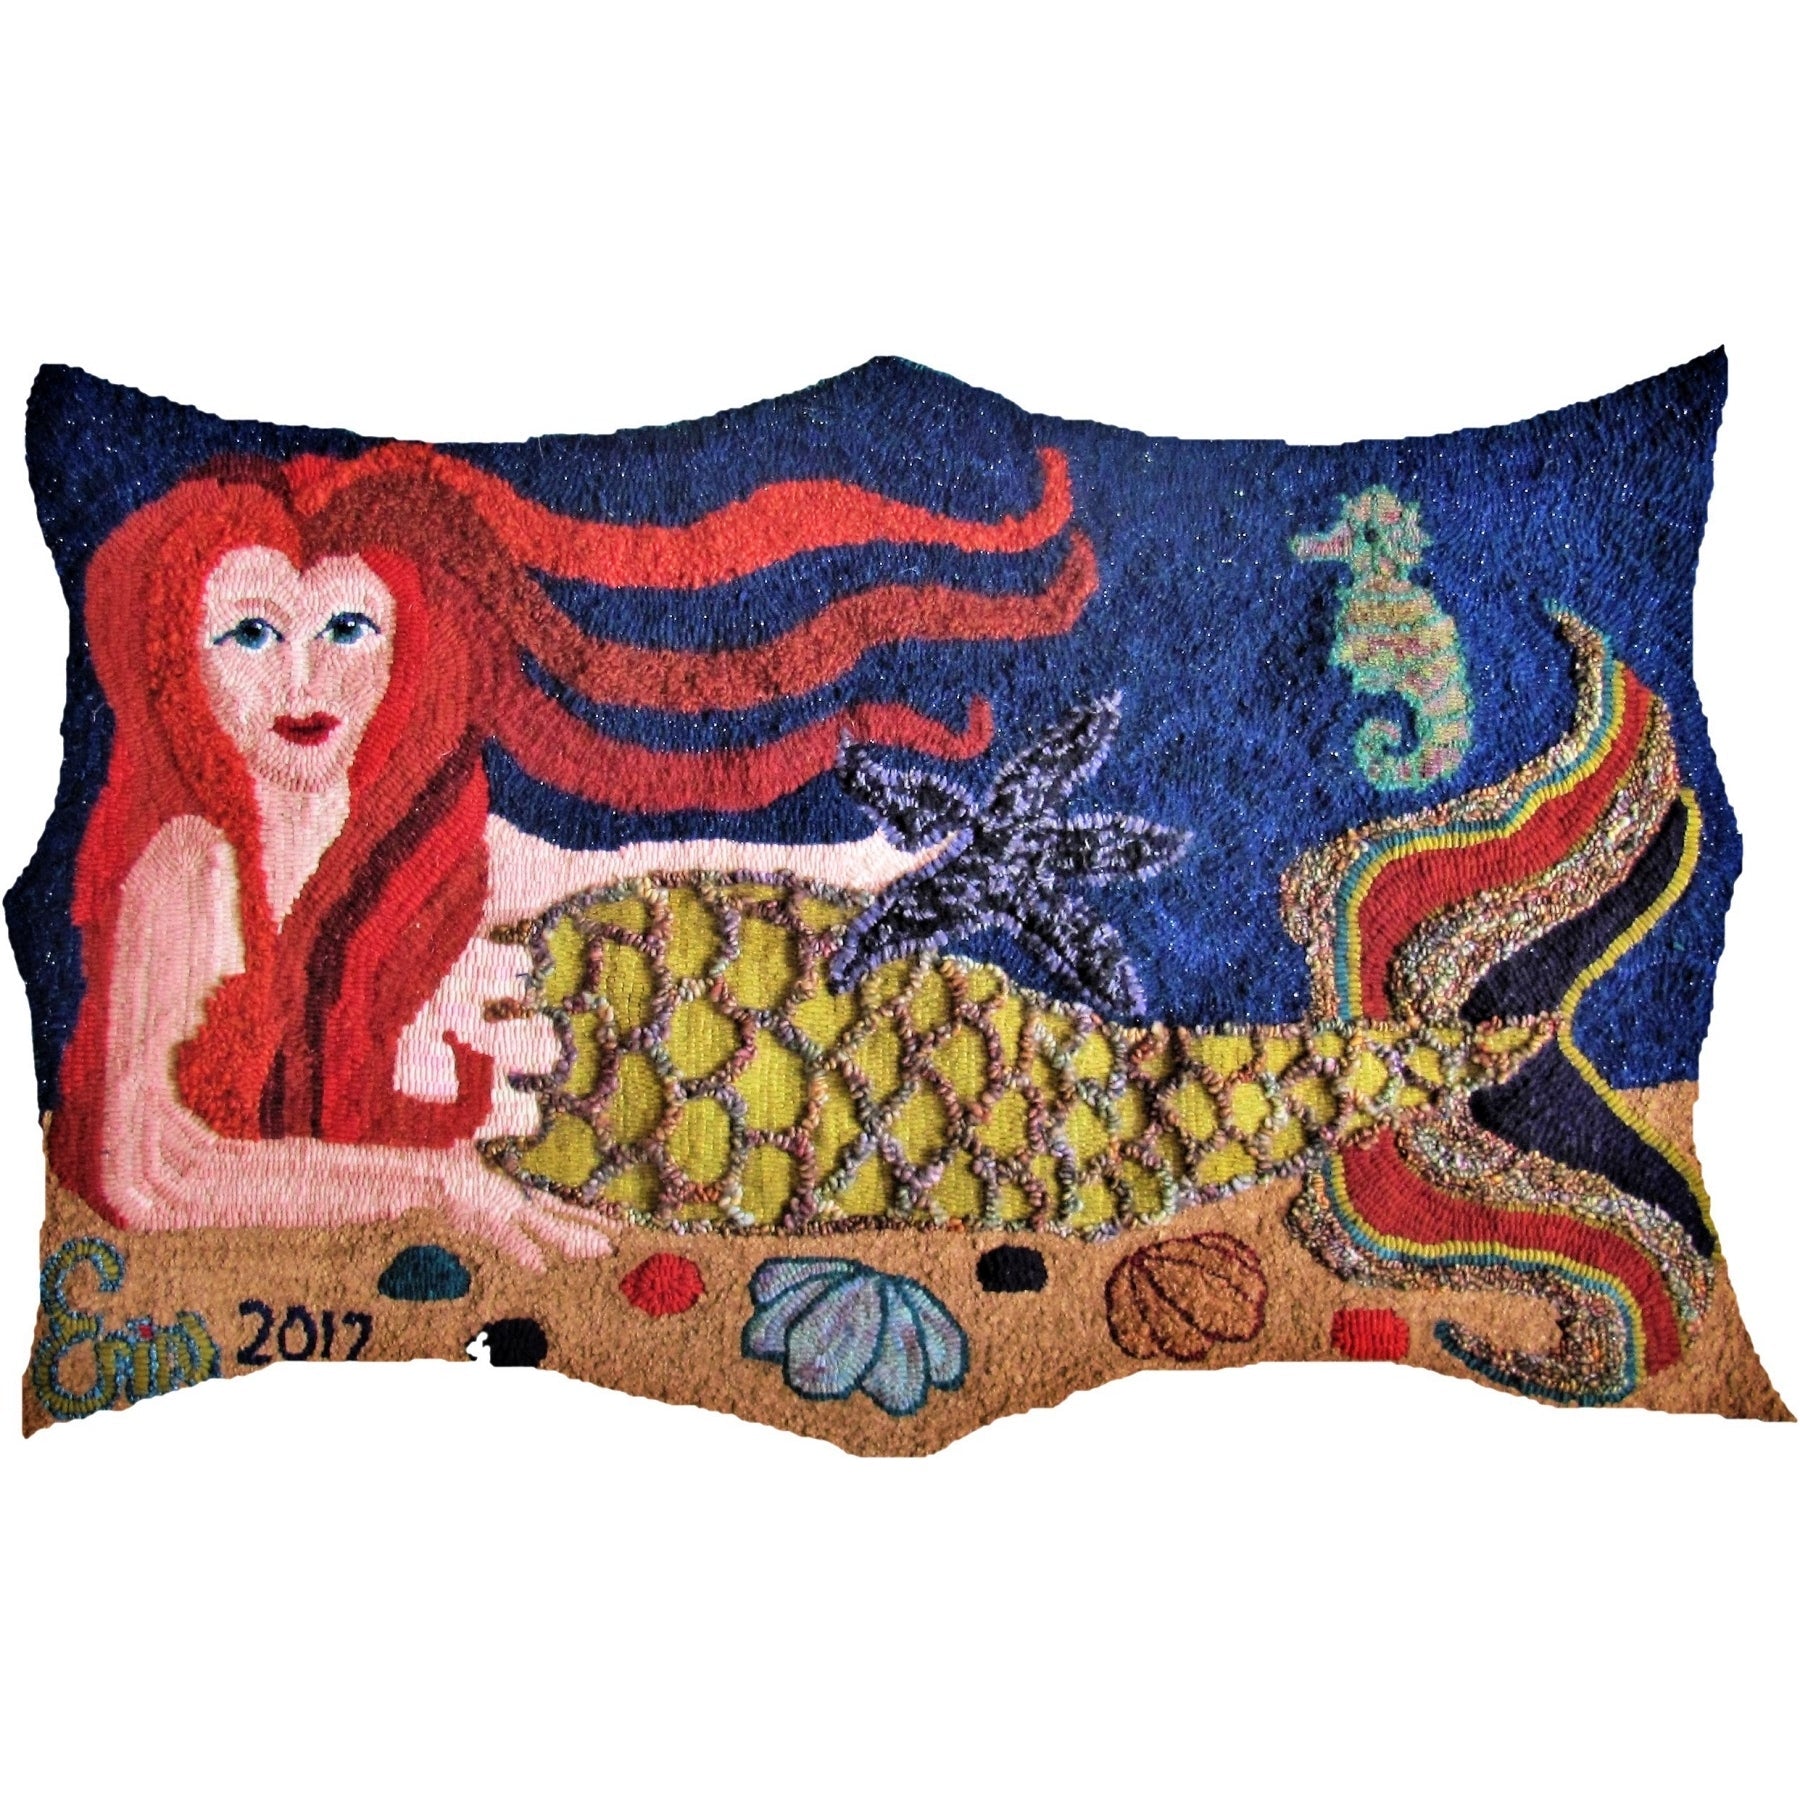 Mermaid, rug hooked by Erin McKenna